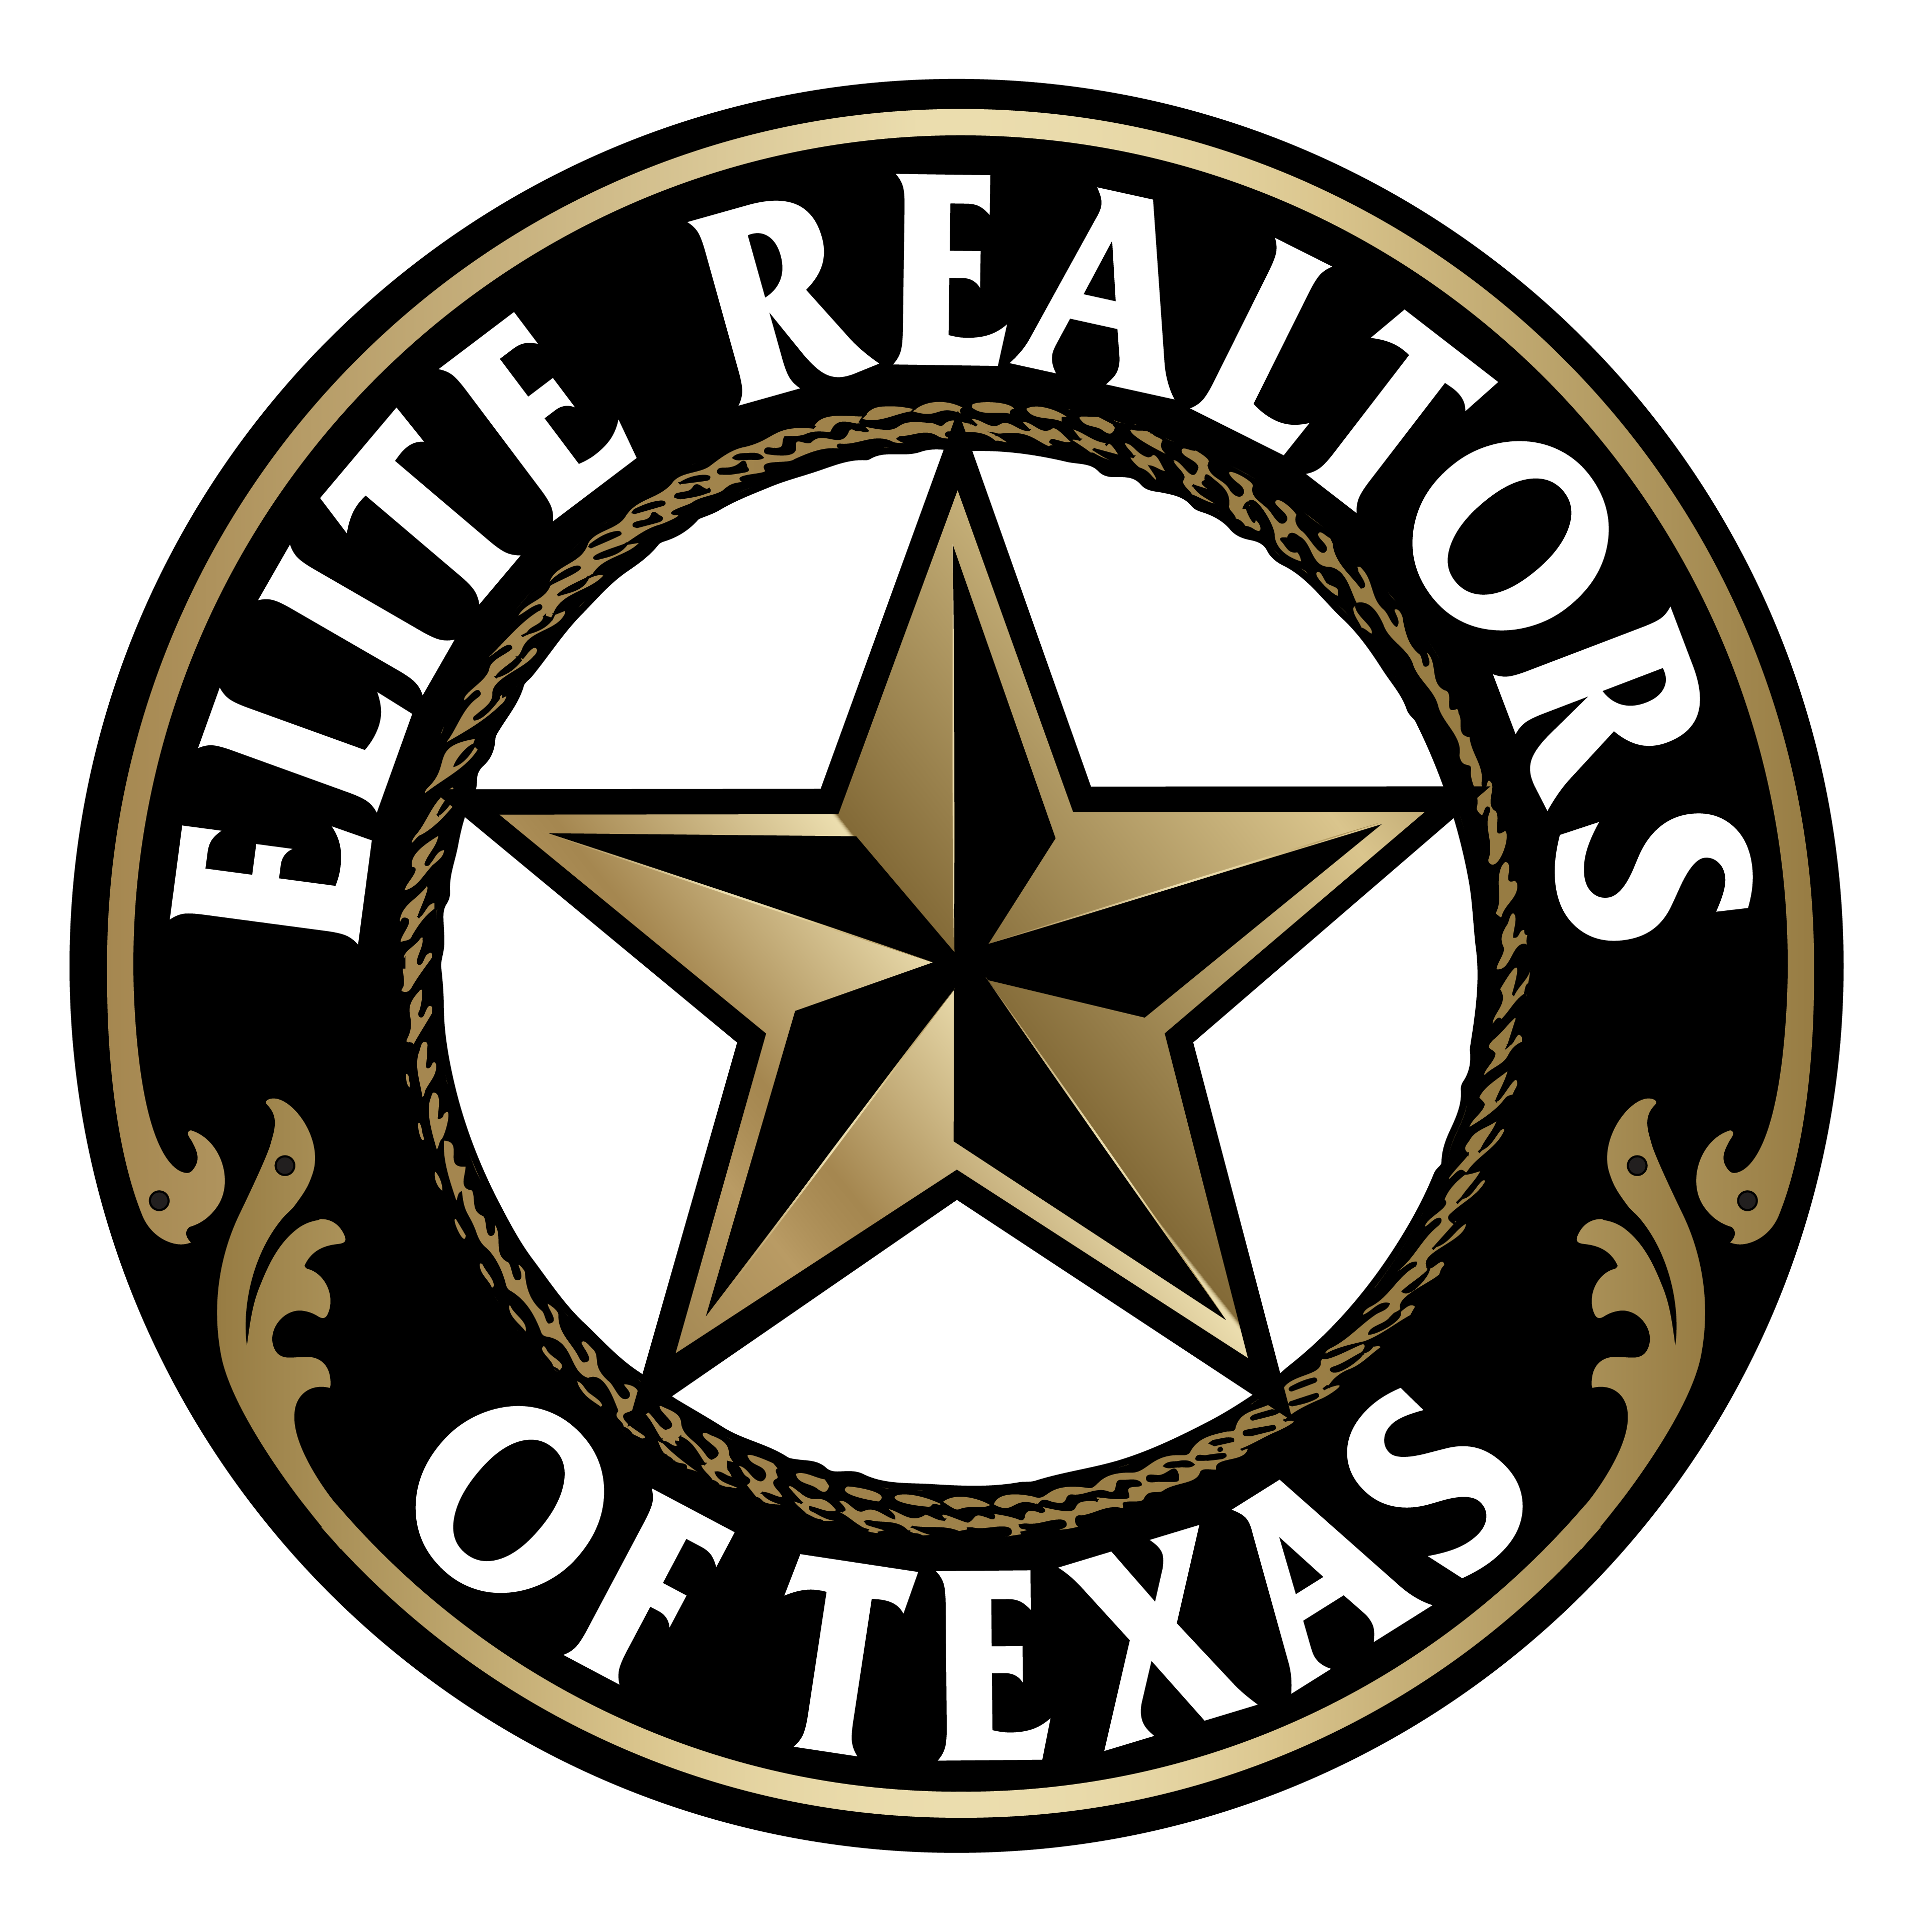 Elite, Realtors Of Texas logo